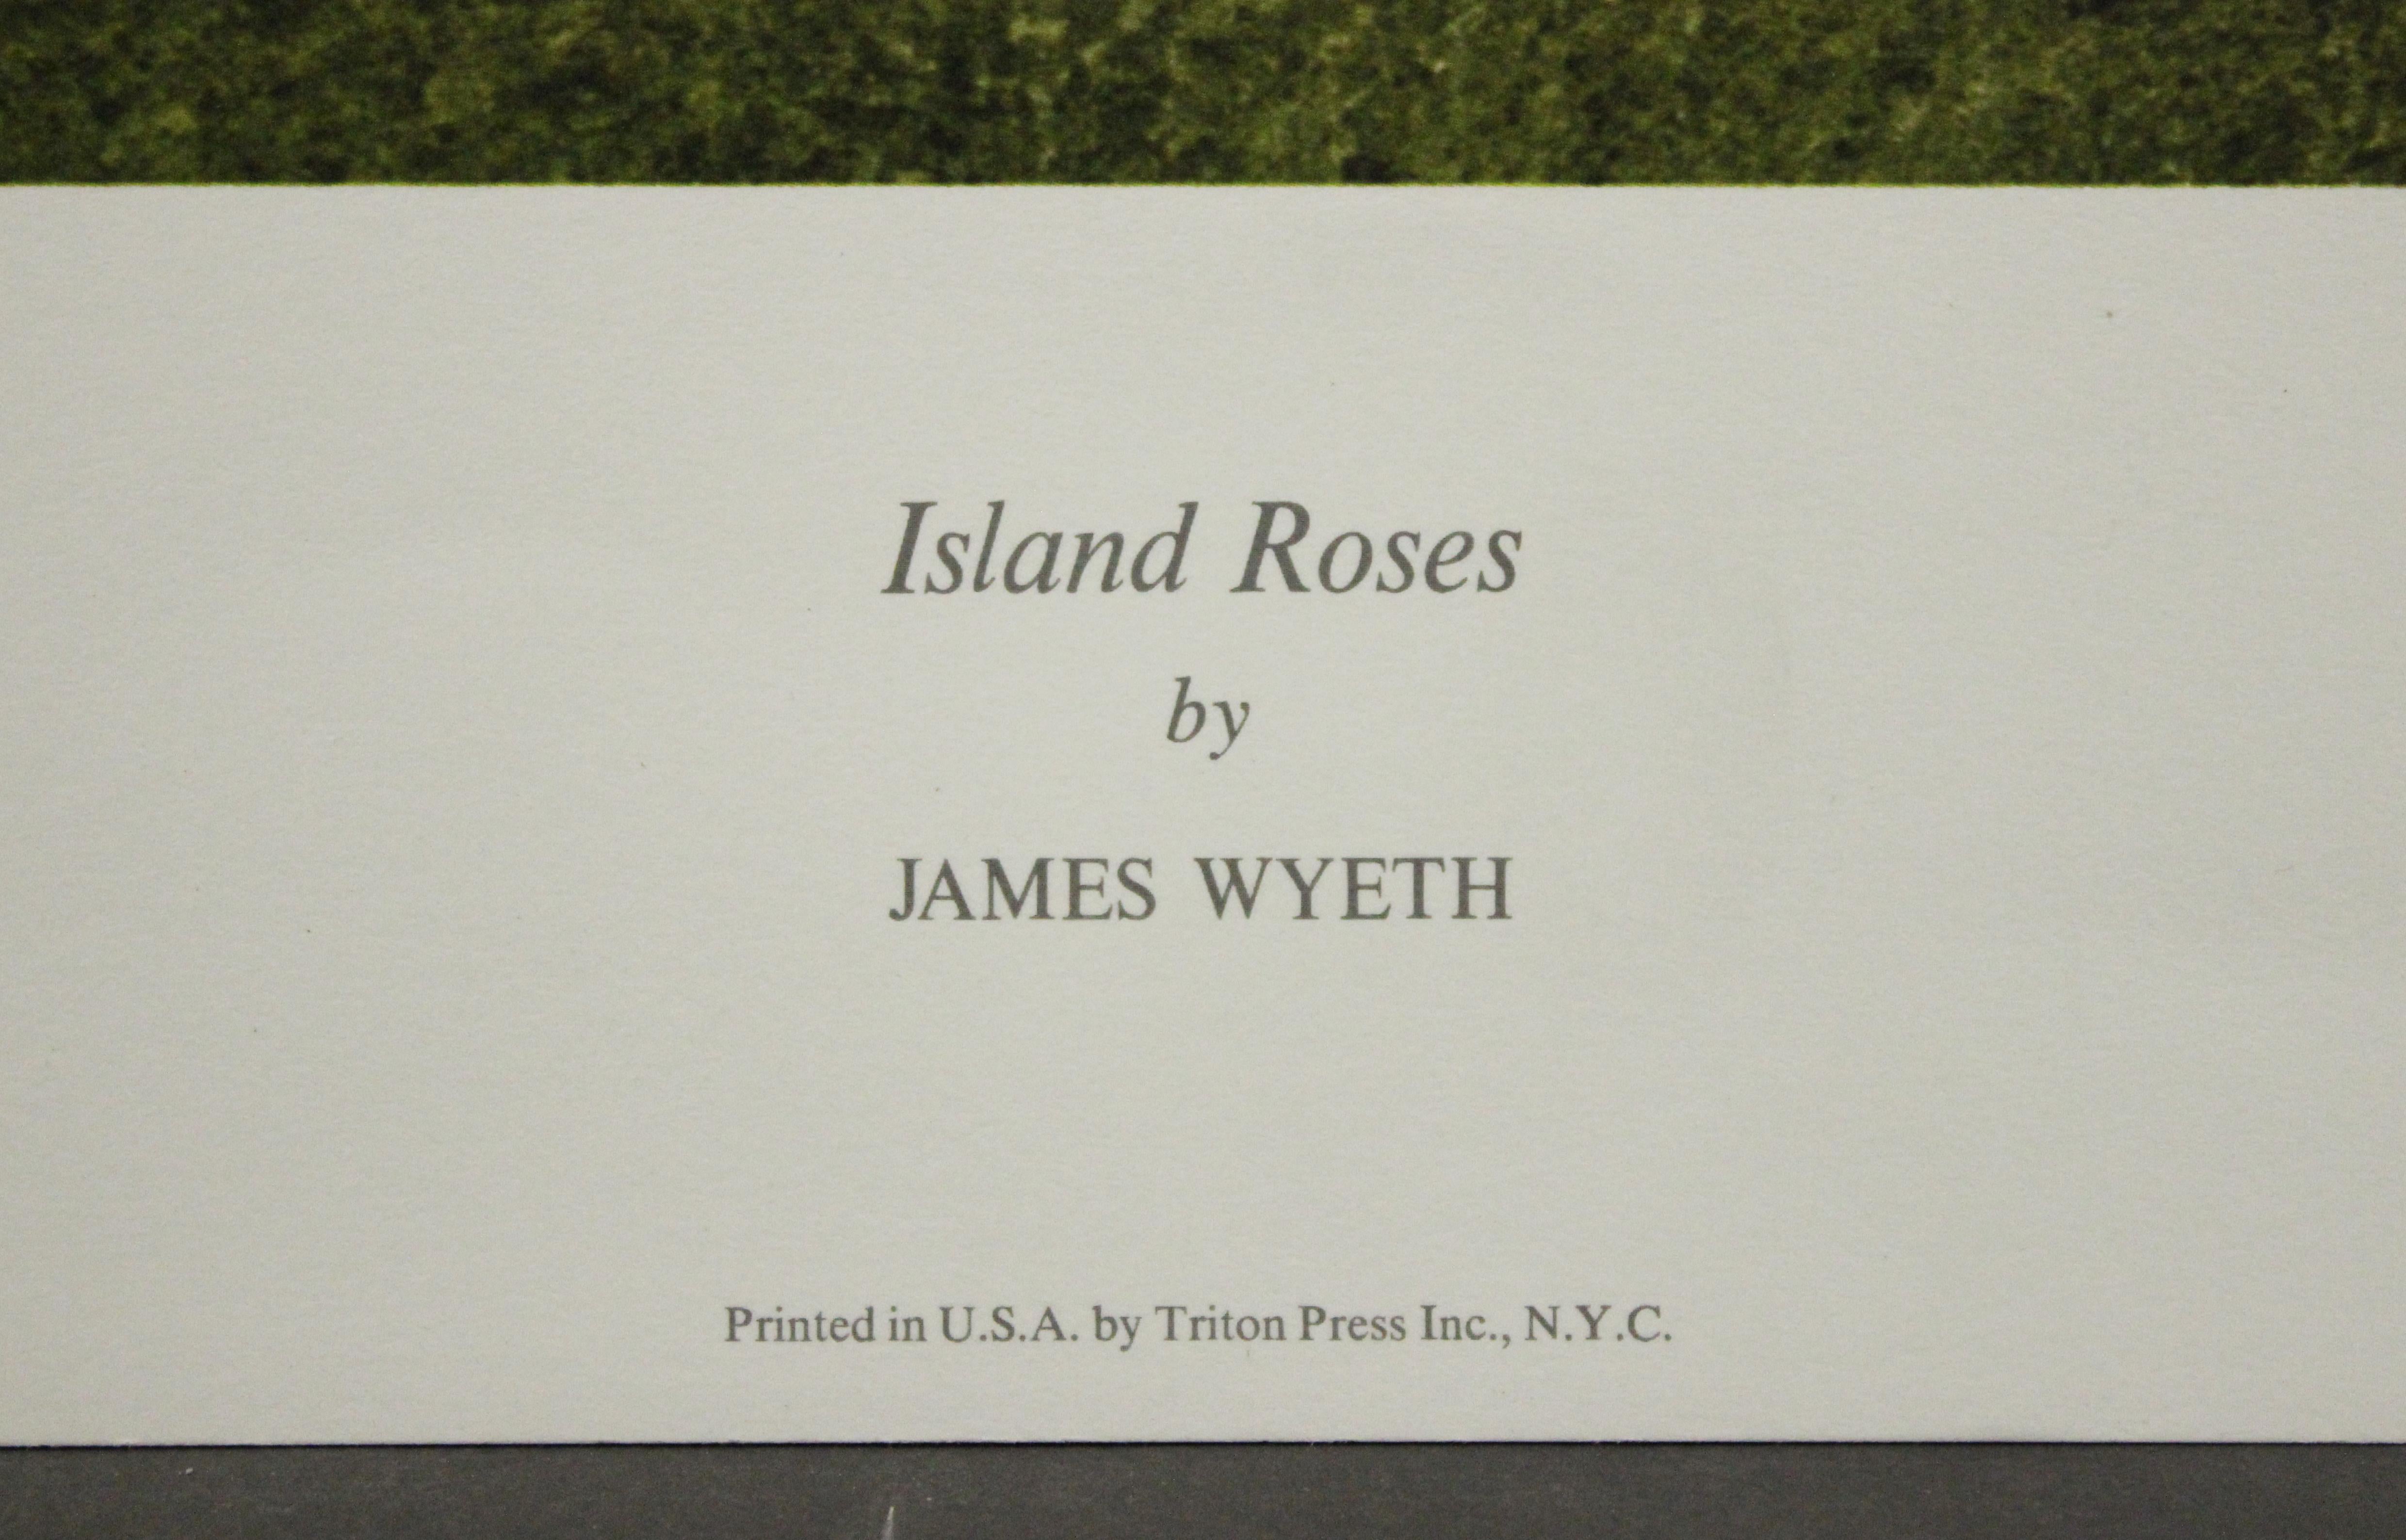 Affiche des roses de l'île. la New York Graphic Society Ltd.  - Print de James Wyeth 